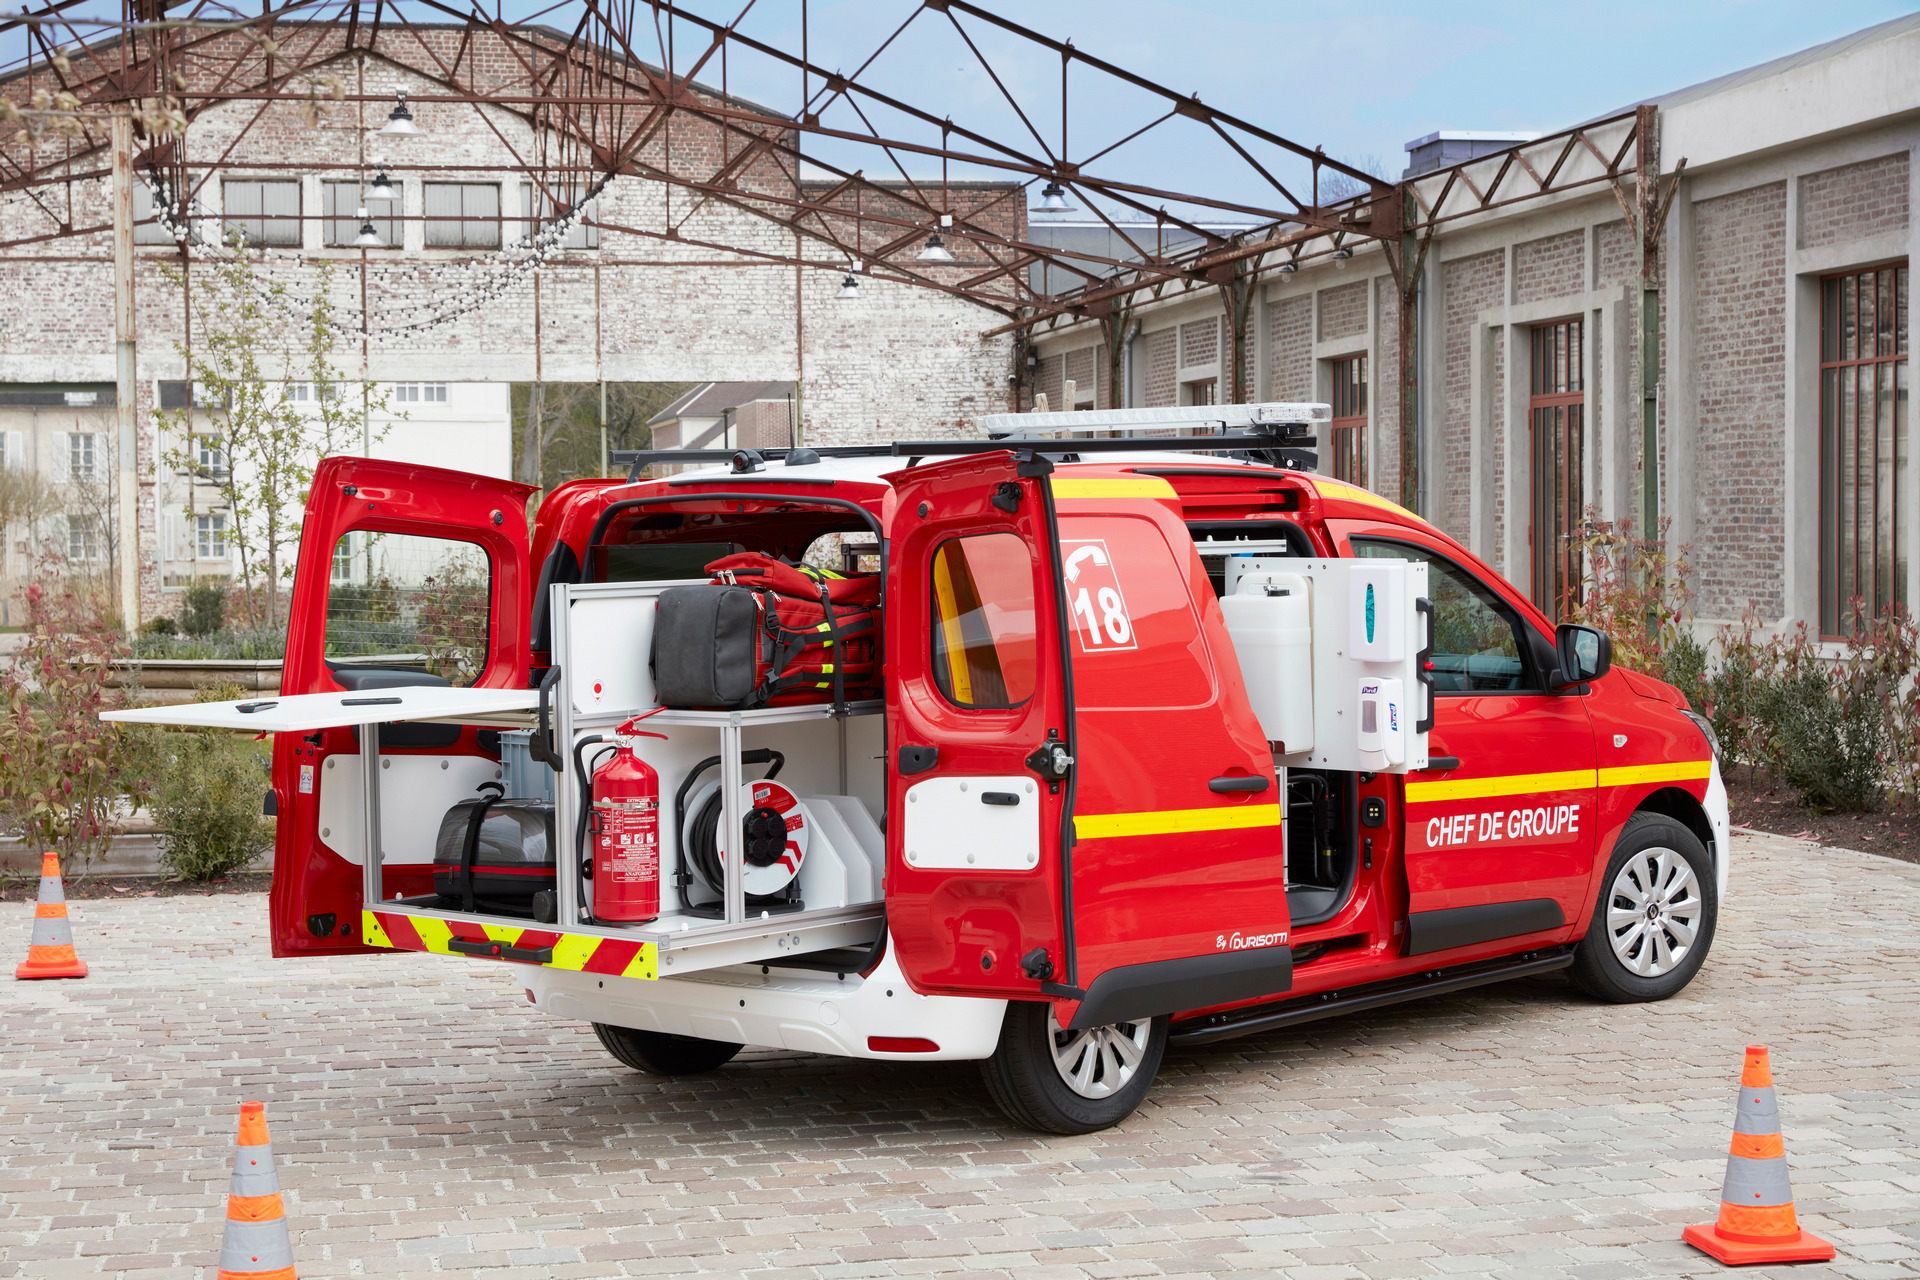 Renault Express Van modifikuotas specialiųjų tarnybų automobilis pastatytas šalia pilko pastato, pro atidarytas galines duris matoma gelbėjimo įranga